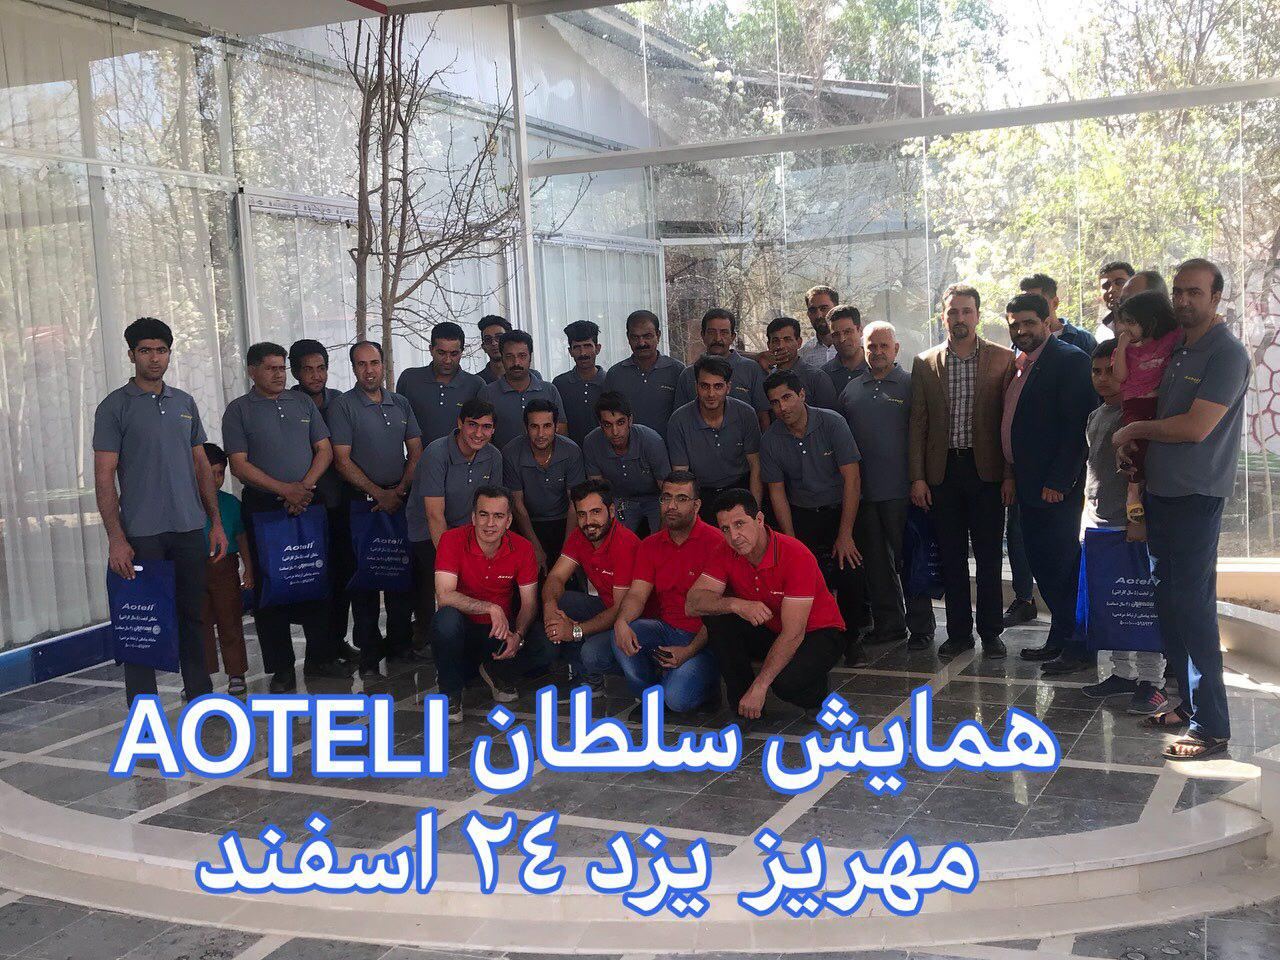 در سراسر ایران نمایندگان اوتلی خدمت را سرلوحه کار خود قرار داده اند و این رمز پیروزی است 